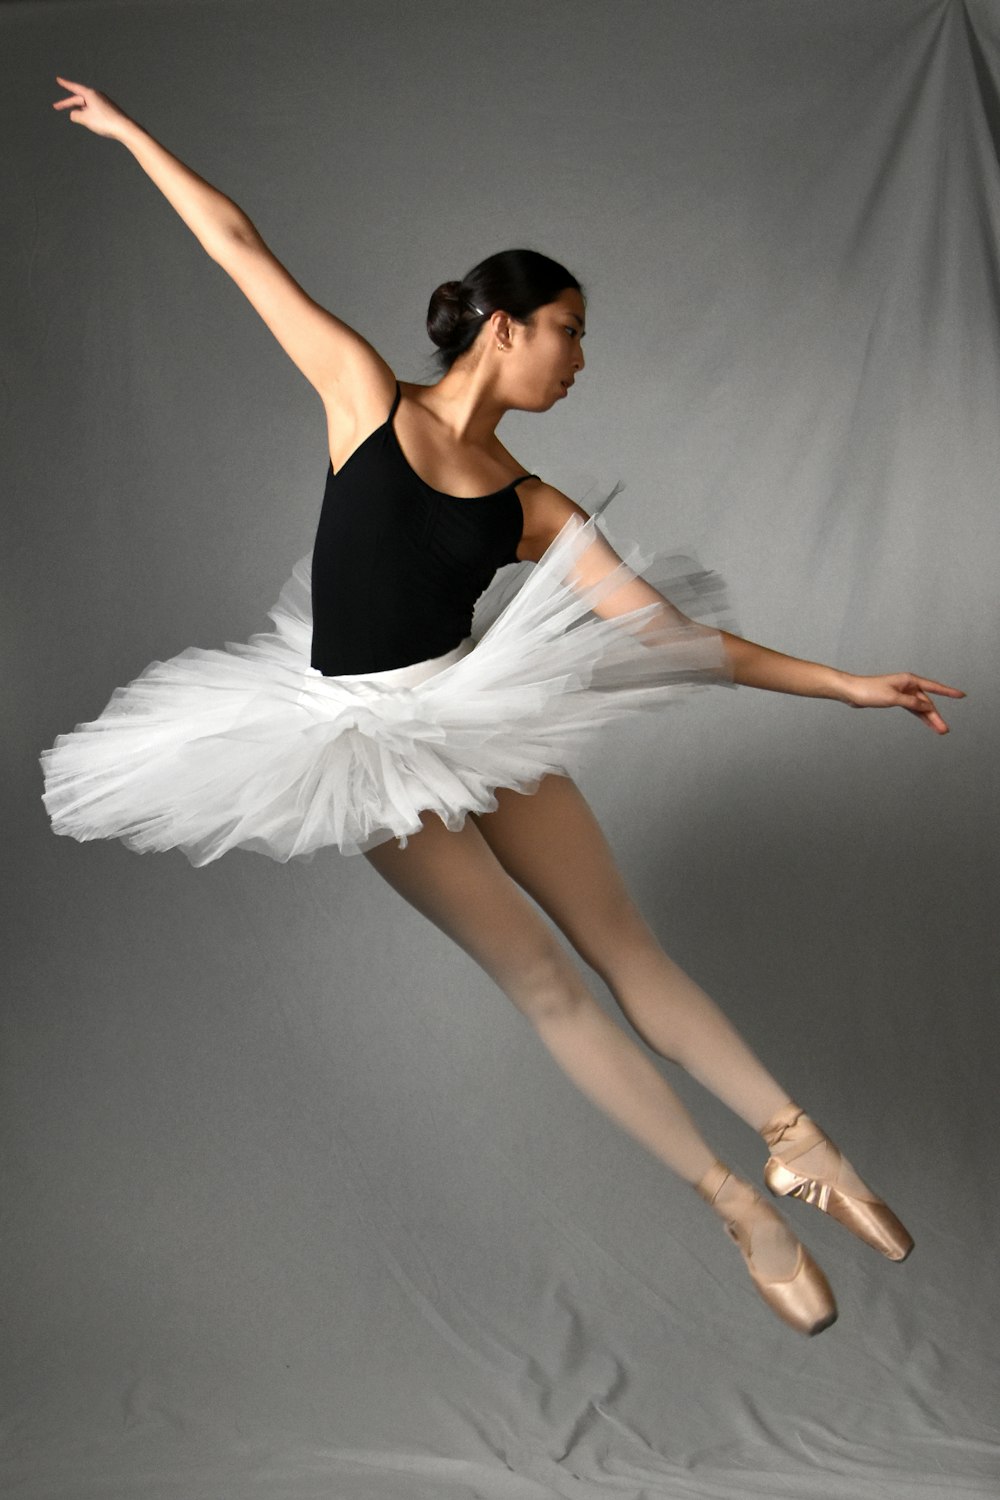 Une ballerine en justaucorps noir et tutu blanc photo – Photo Avant JC  Gratuite sur Unsplash